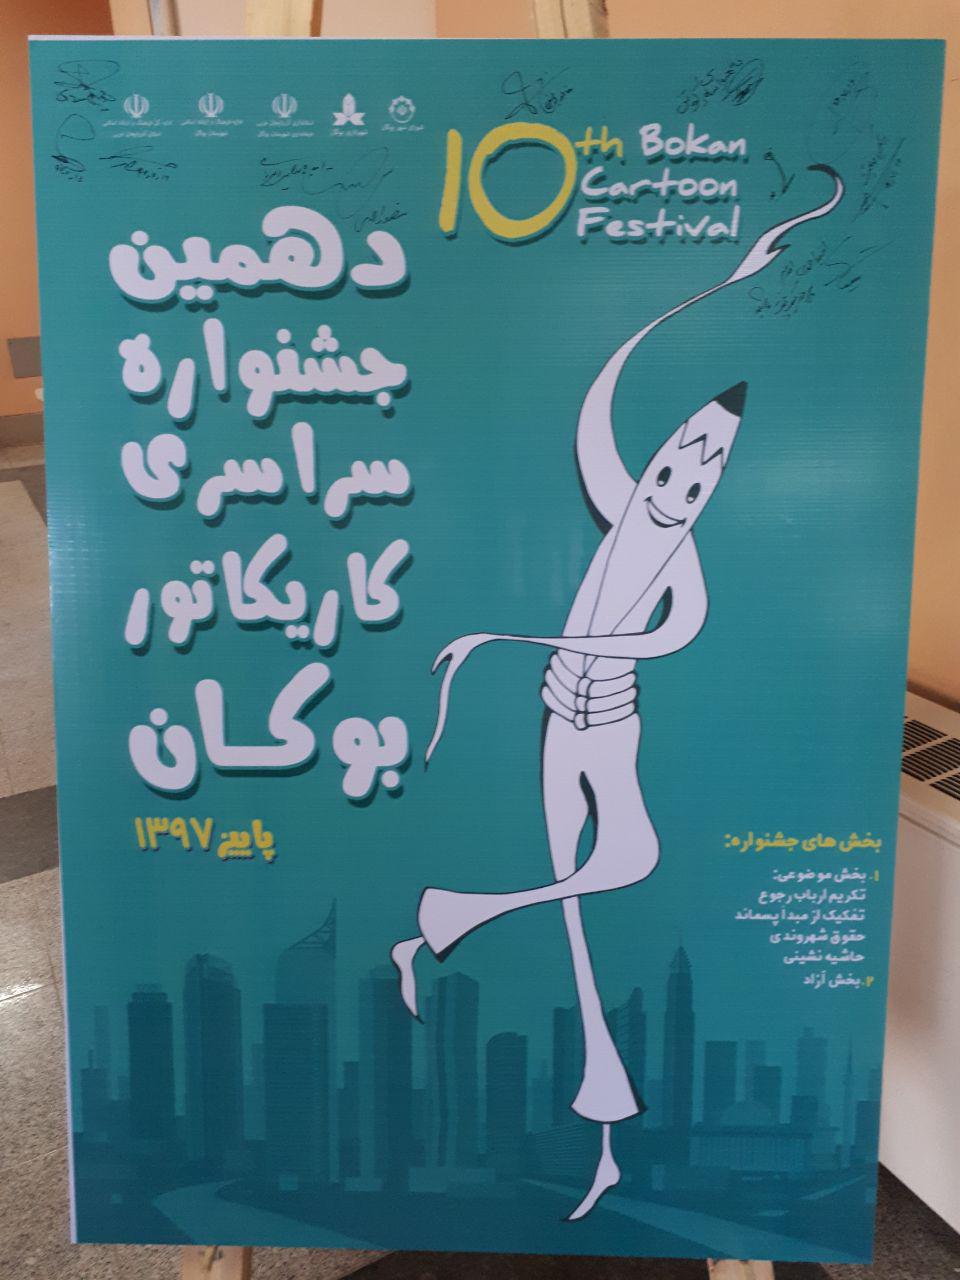 پوستر و تندیس دهمین جشنواره ملی کاریکاتور بوکان رونمایی شد